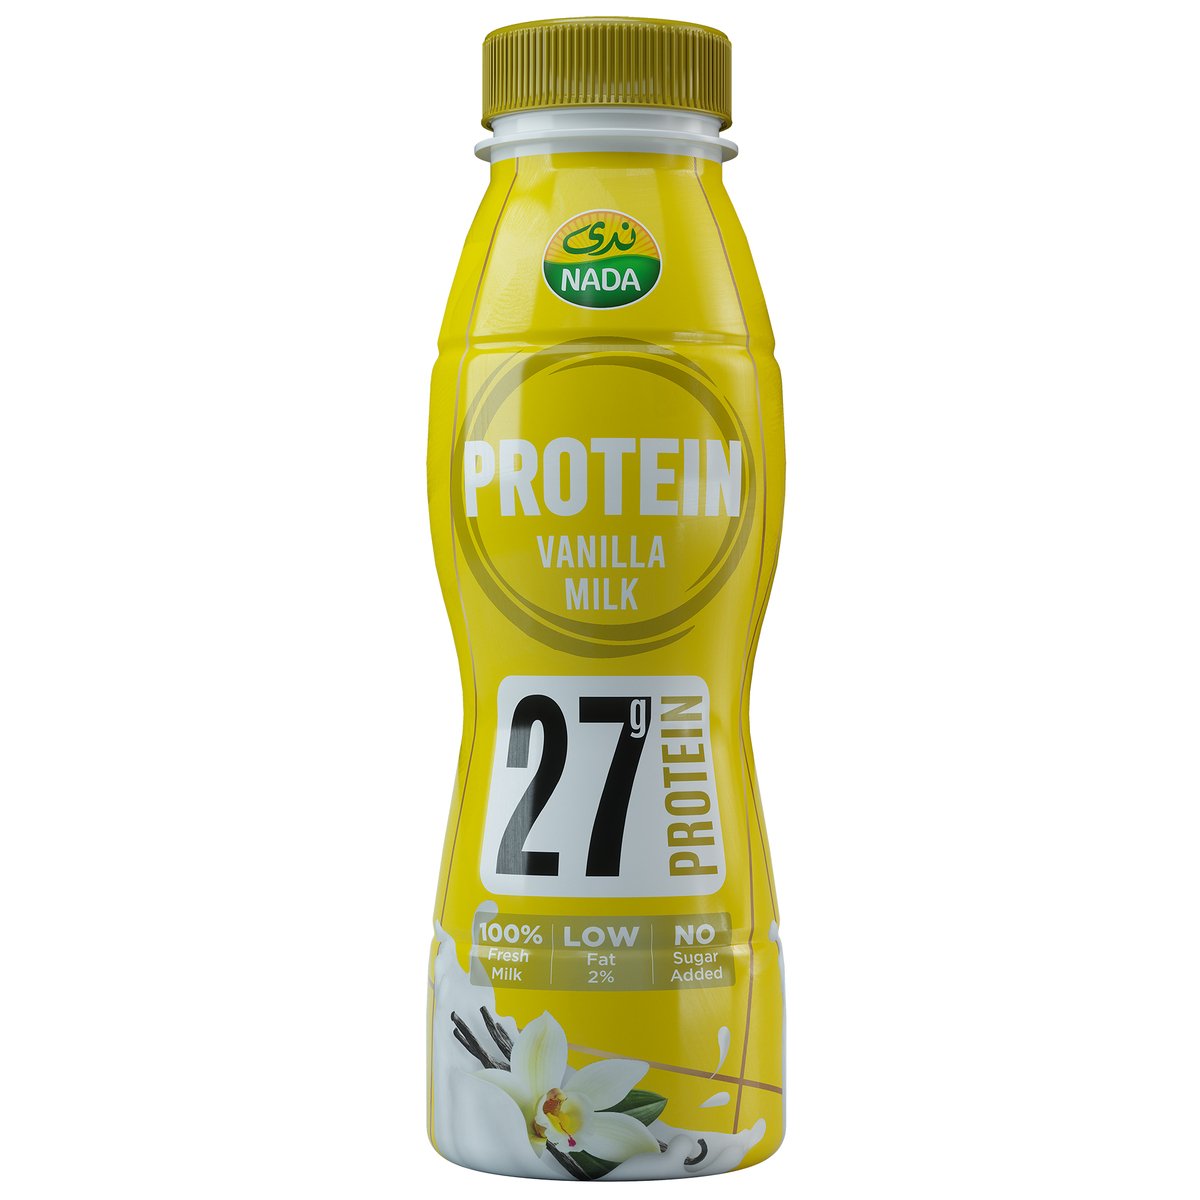 اشتري قم بشراء ندى بروتين حليب الفانيليا 320 مل Online at Best Price من الموقع - من لولو هايبر ماركت Flavoured Milk في السعودية